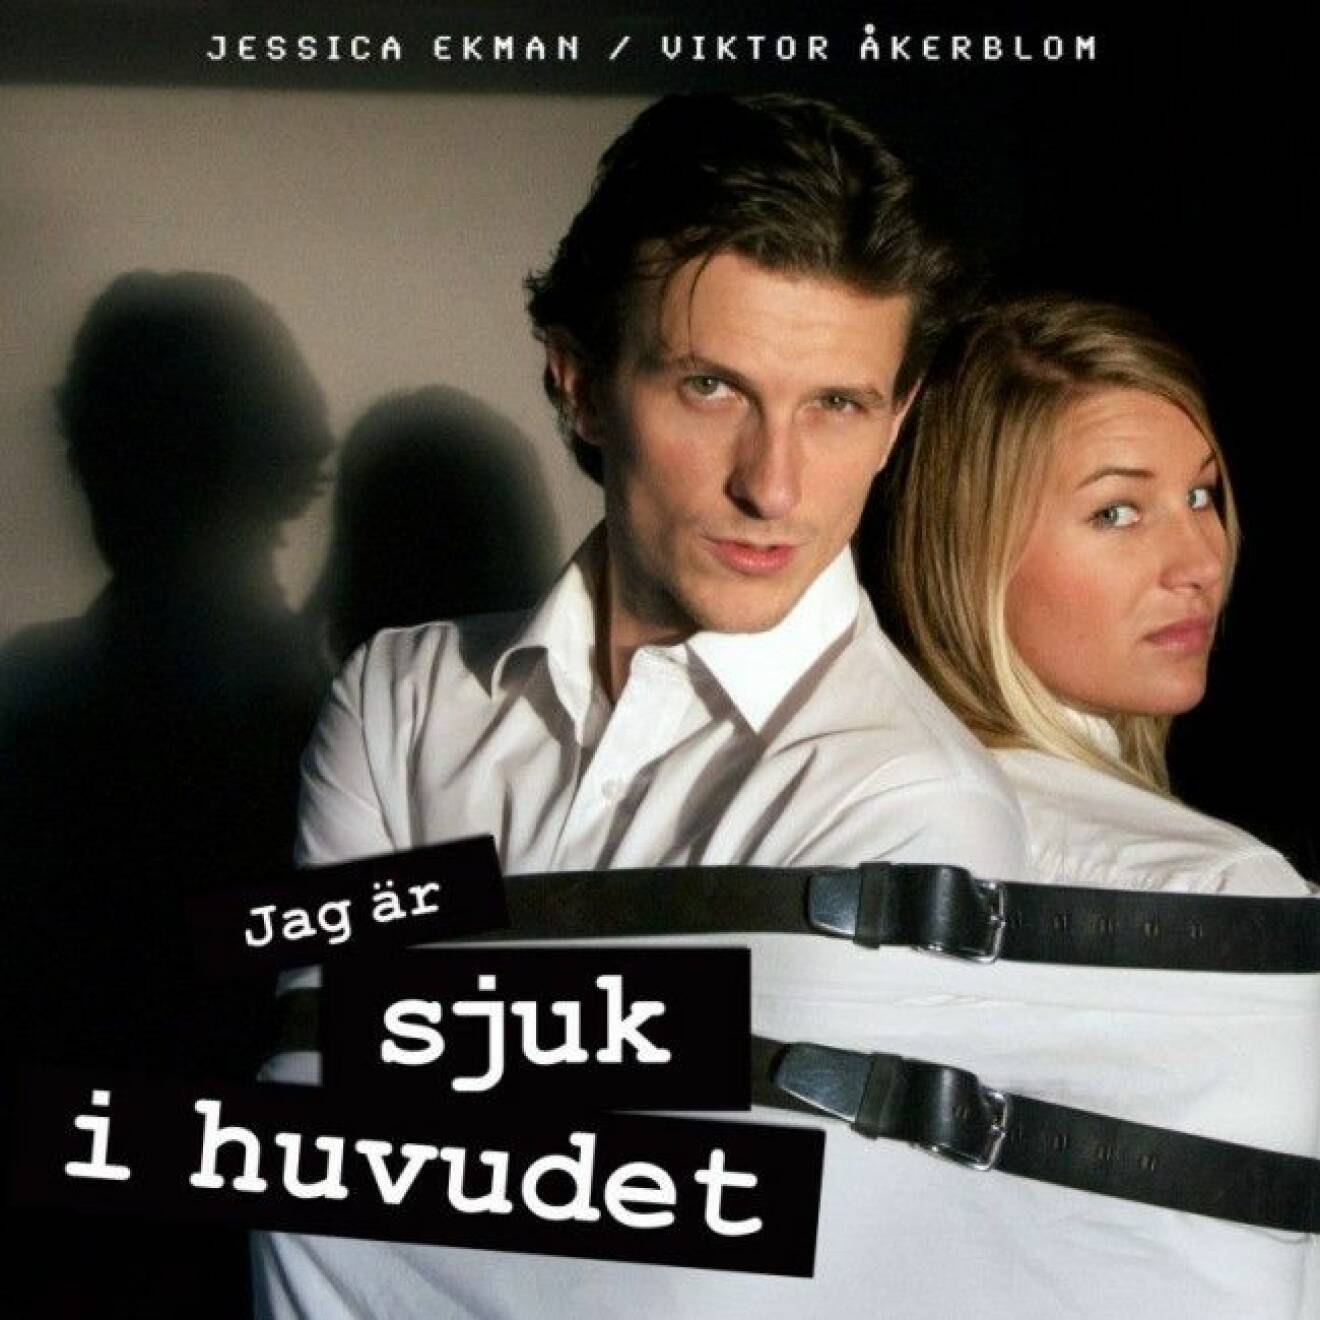 Viktor Åkerblom och Jessica Ekman släpper ett avsnitt i veckan som går att lyssna på i iTunes, Podcaster och Podomatic. Mer info på hemsidan: sjukihuvudet.se.